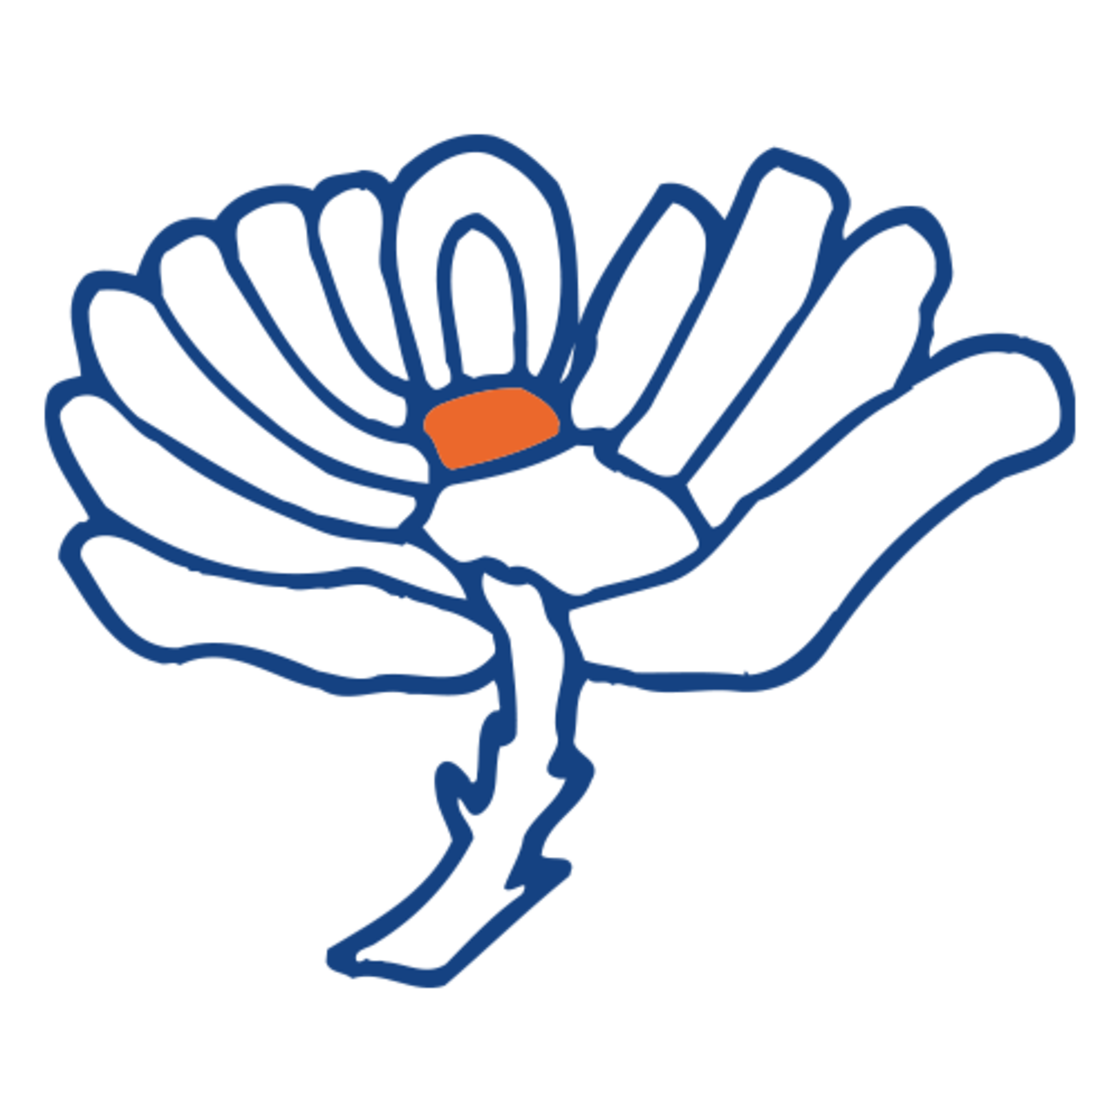 Yorkshire logo